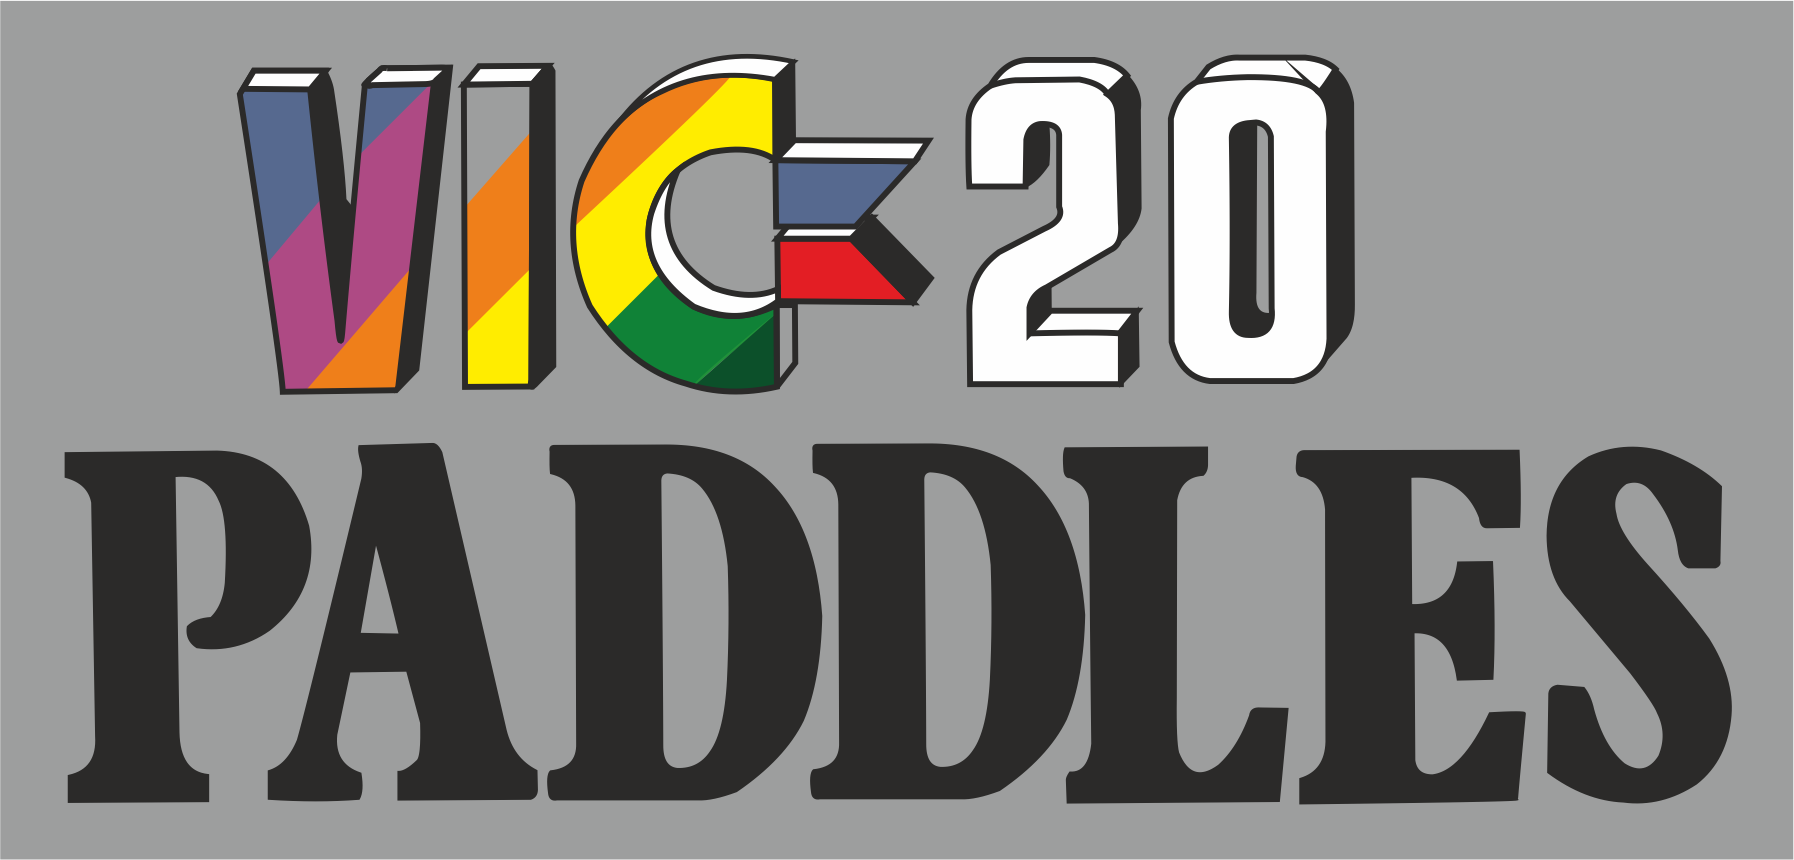 Commodore VIC20 Paddles: logo